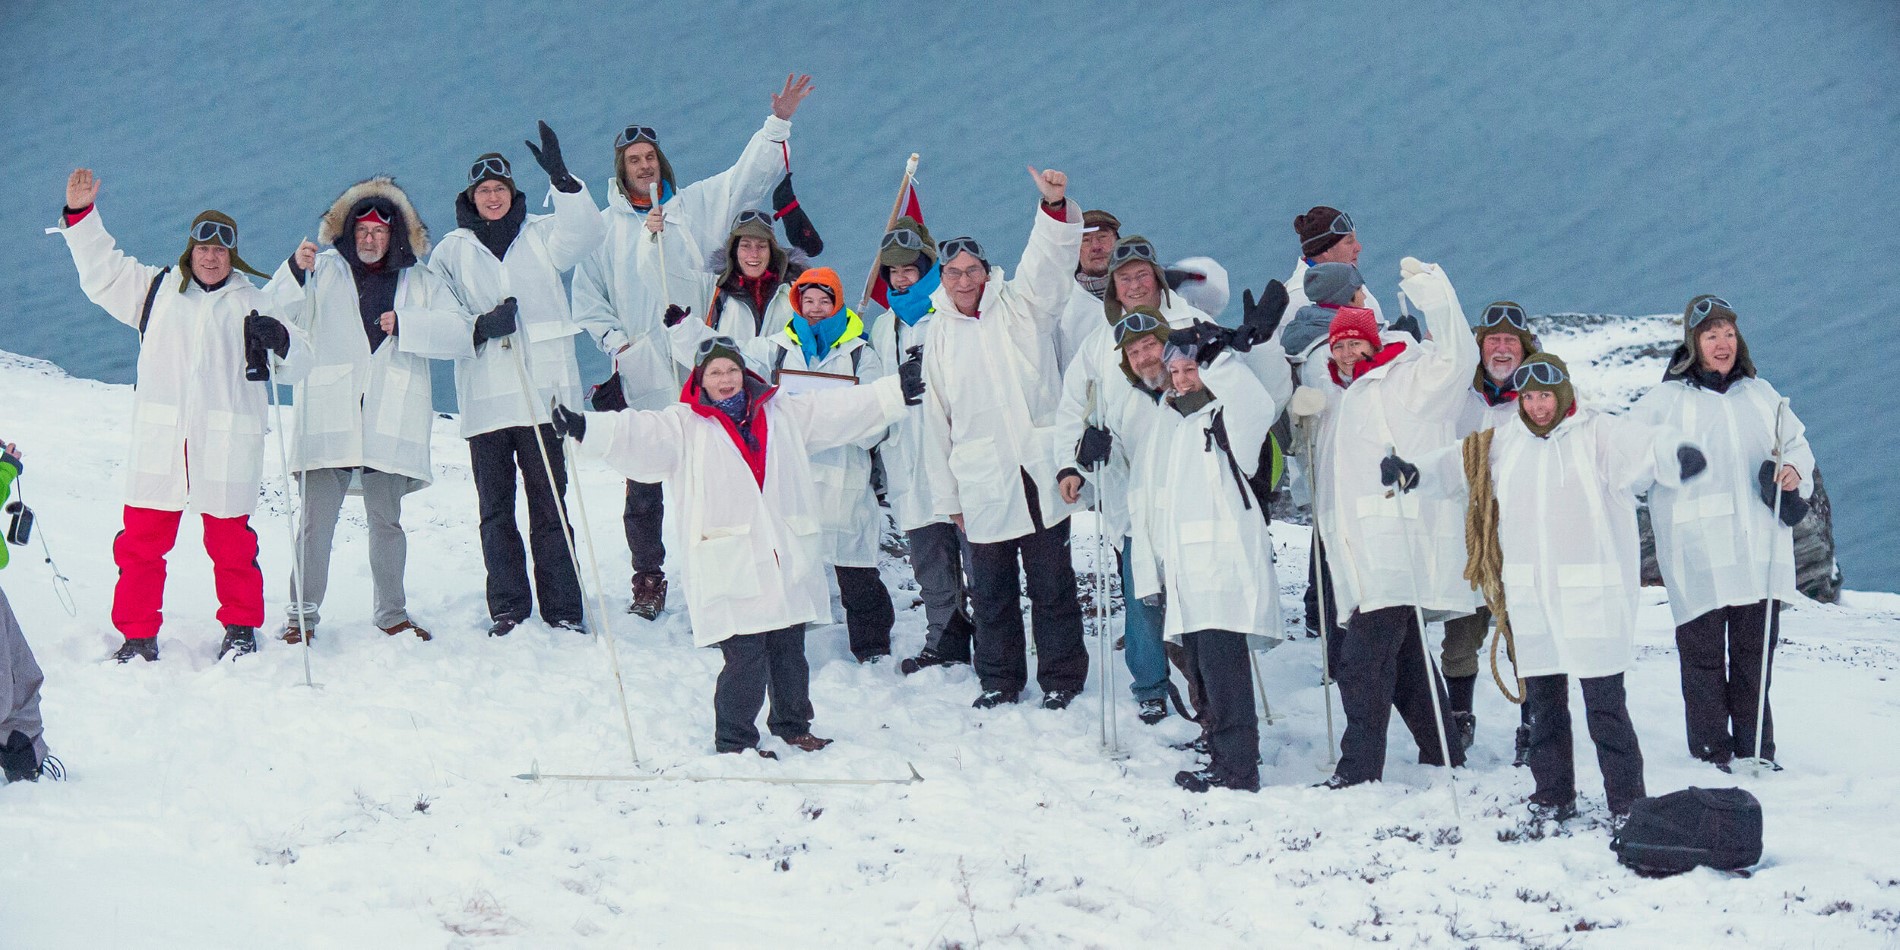 Un groupe de personnes posant pour une image dans la neige